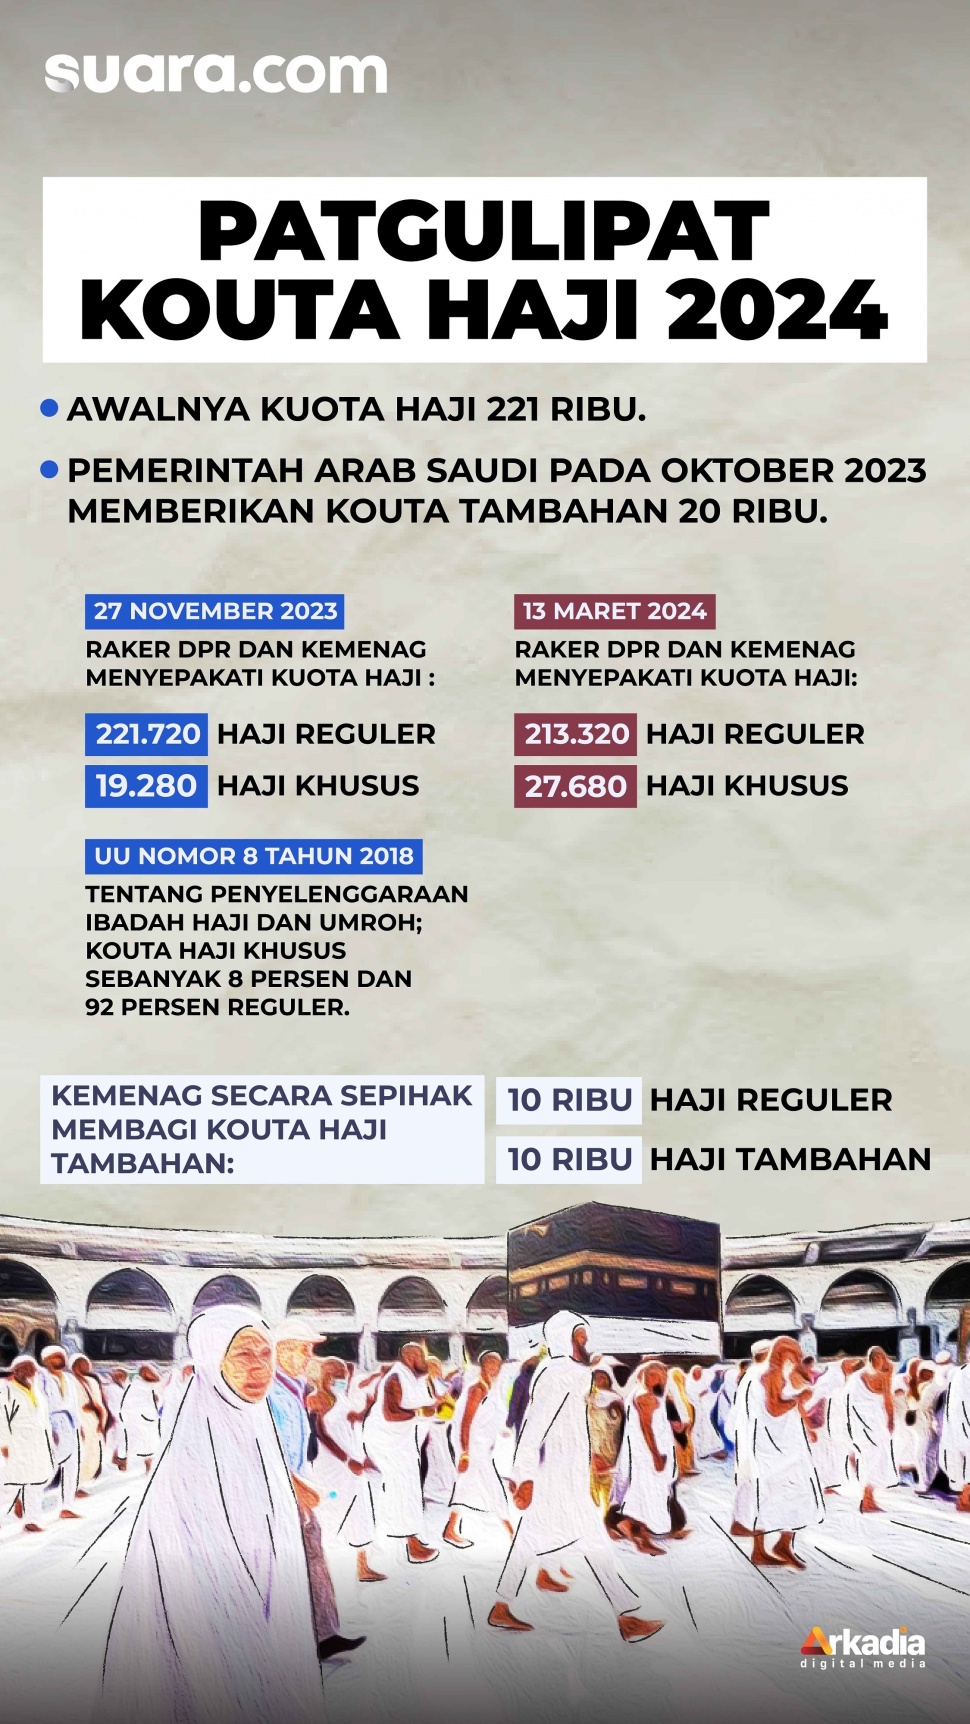 Infografis patgulipat dalam pengelolaan kuota haji oleh Kementerian Agama. [Suara.com/Rochmat]